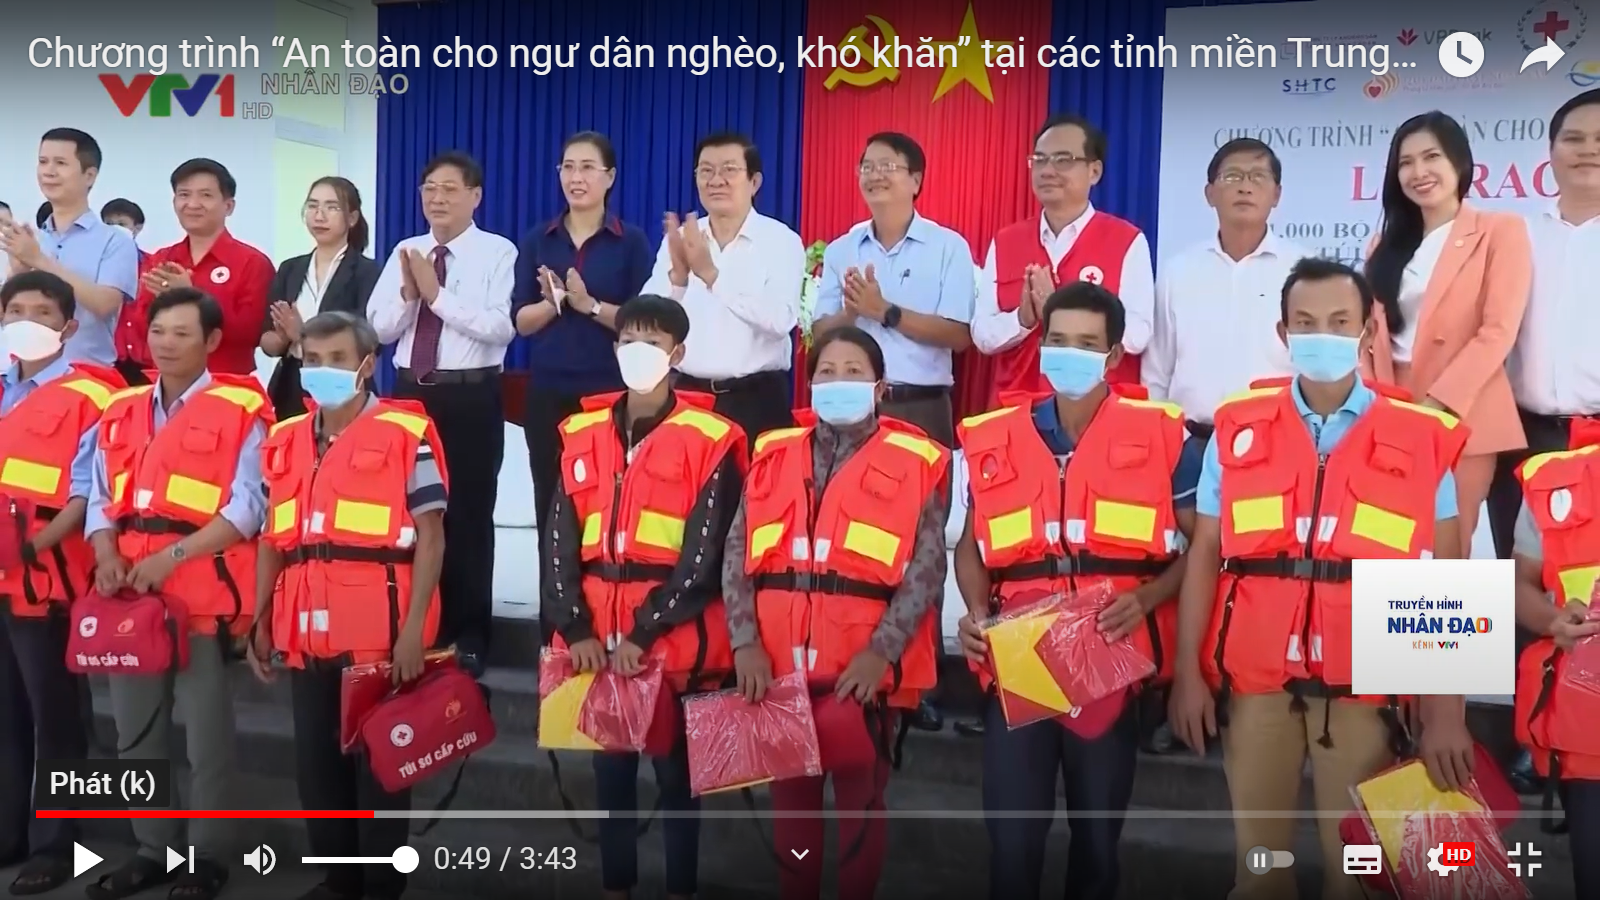 Video: Chương trình “An toàn cho ngư dân nghèo, khó khăn” tại các tỉnh miền Trung